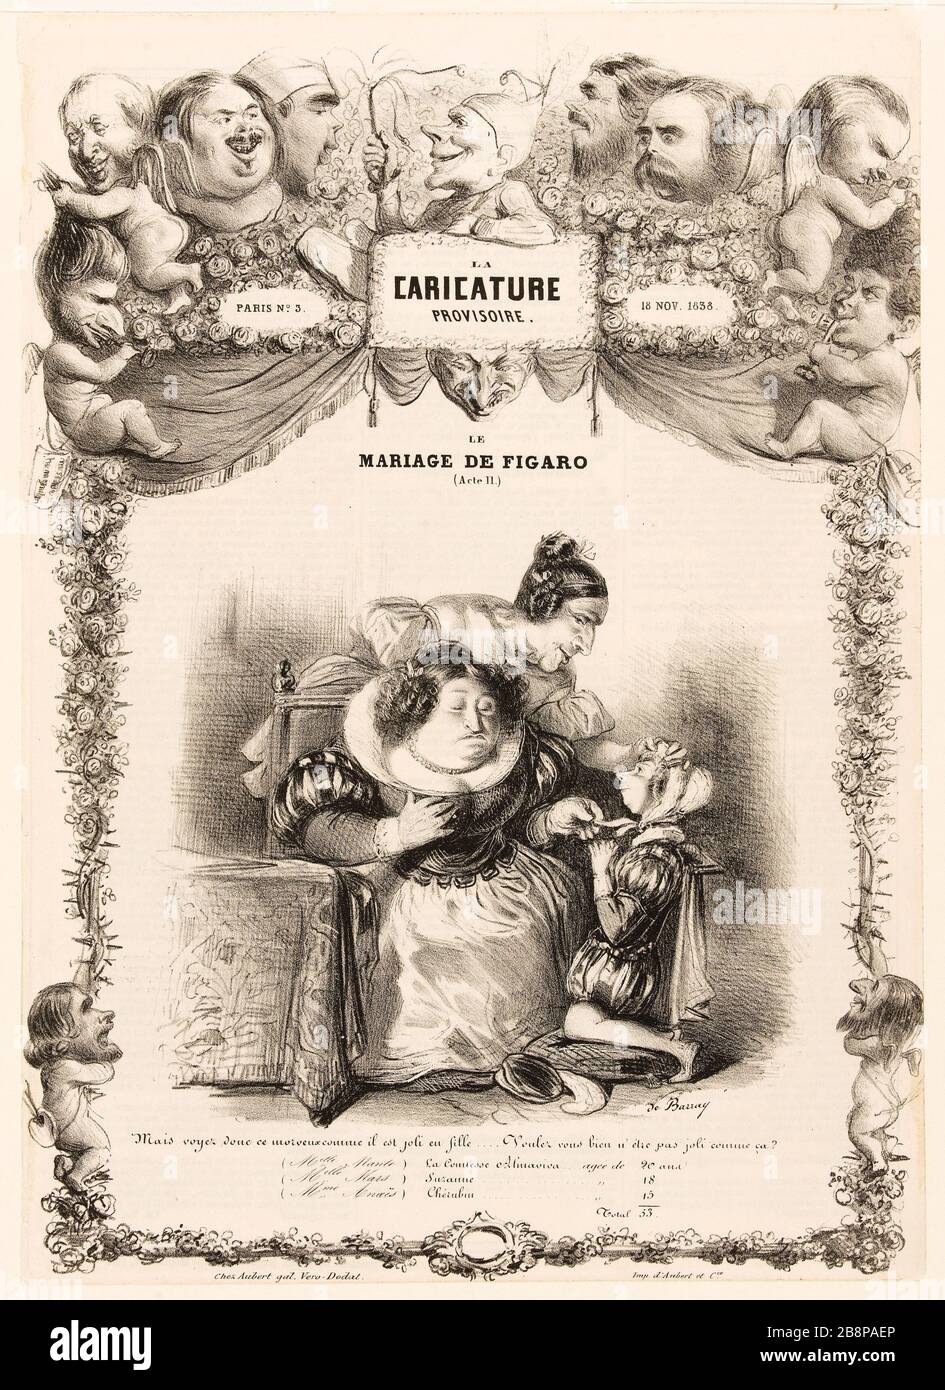 Die provisorische Karikatur Nr. 3 vom 18. November des Jahres 1838. Die Ehe von Figaro (Gesetz II), [Porträts der Schriftsteller Balzac laden] de Barray. "La Caricature provisoire, Nr. 3, 18 novembre im Jahre 186. Le mariage de Figaro (Acte II), [Portraits Charge d'écrivains dont Balzac]'. Balzac, Honoré de (99-1850). Hugo, Victor (1802-1885). Dumas, Alexandre (1802-1870). Delacroix, Eugène (1798-1863). Janin, Jules (1804-1874). Kock, Paul de (1793-1871. Lithographie. Im Jahre 182. Paris, Maison de Balzac. Stockfoto